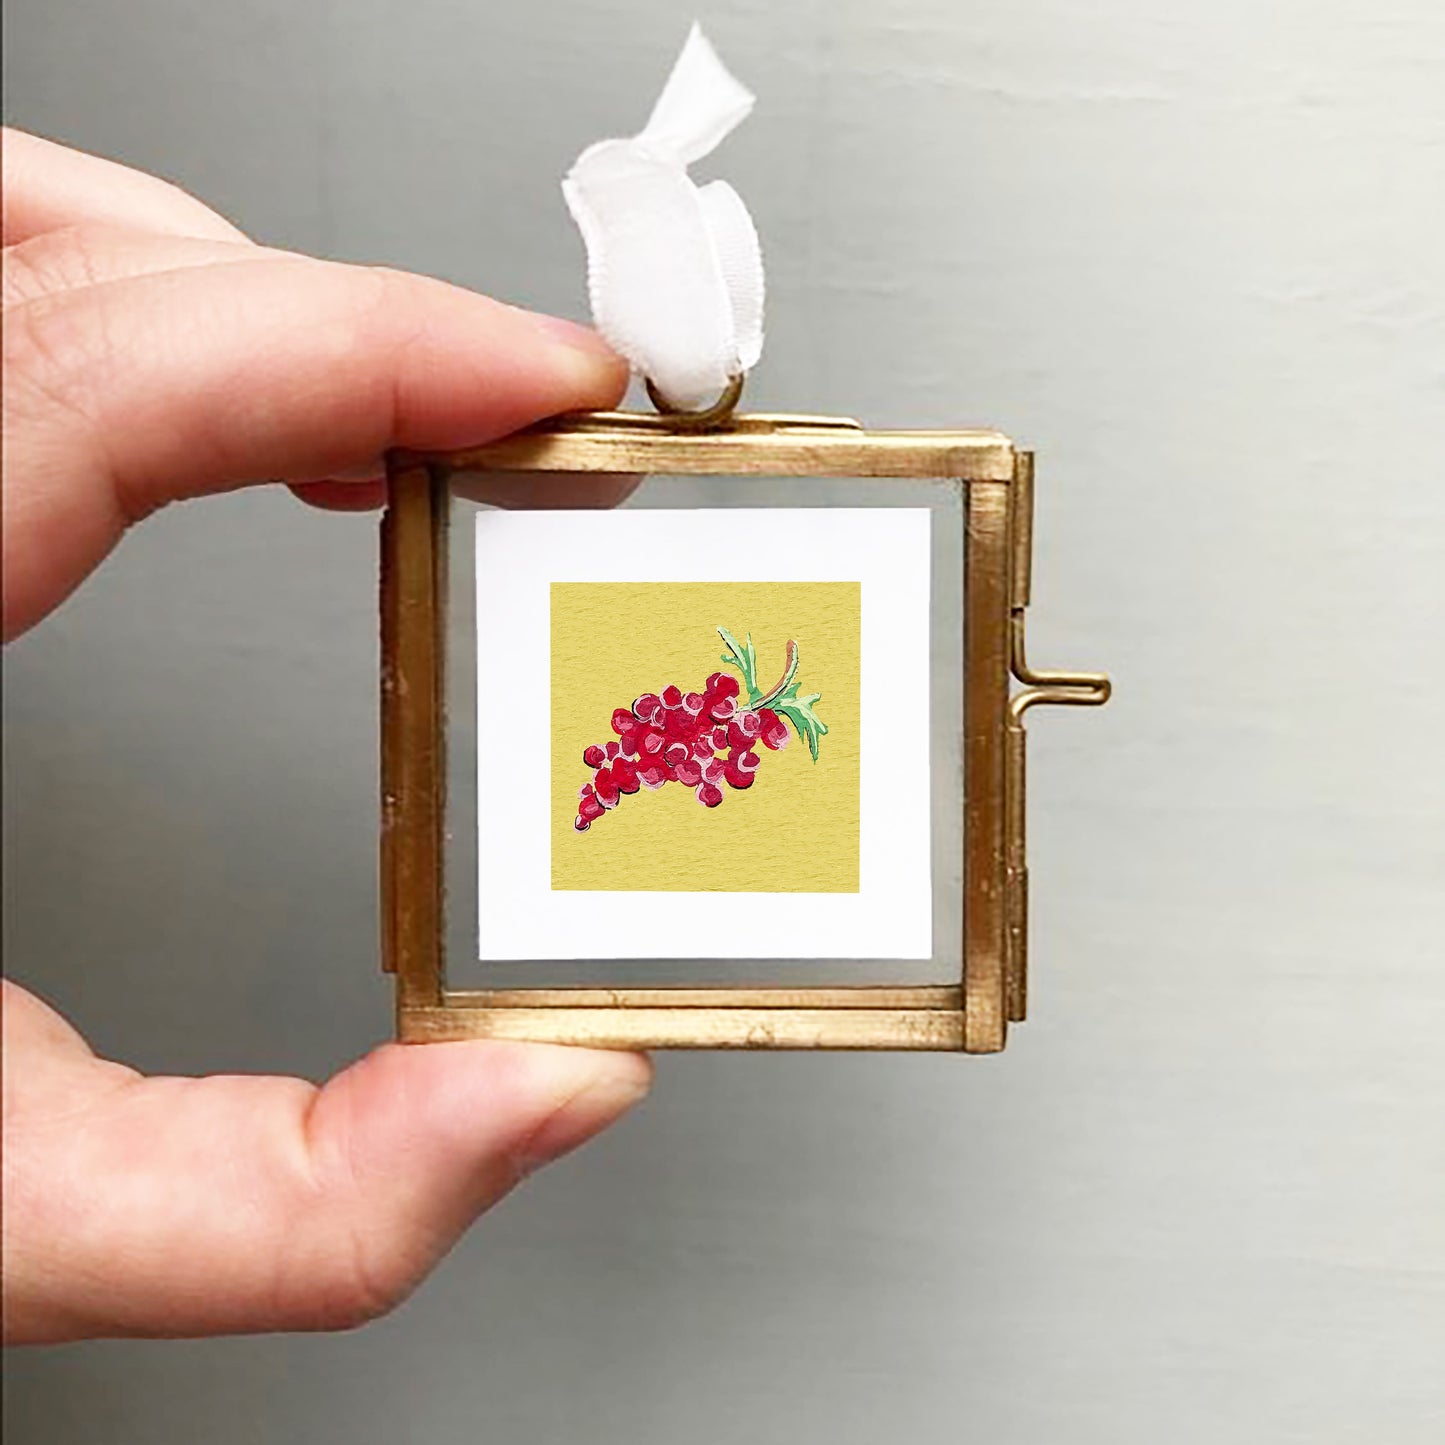 ORIGINAL Mini 1" Grapes Gouache Original Painting